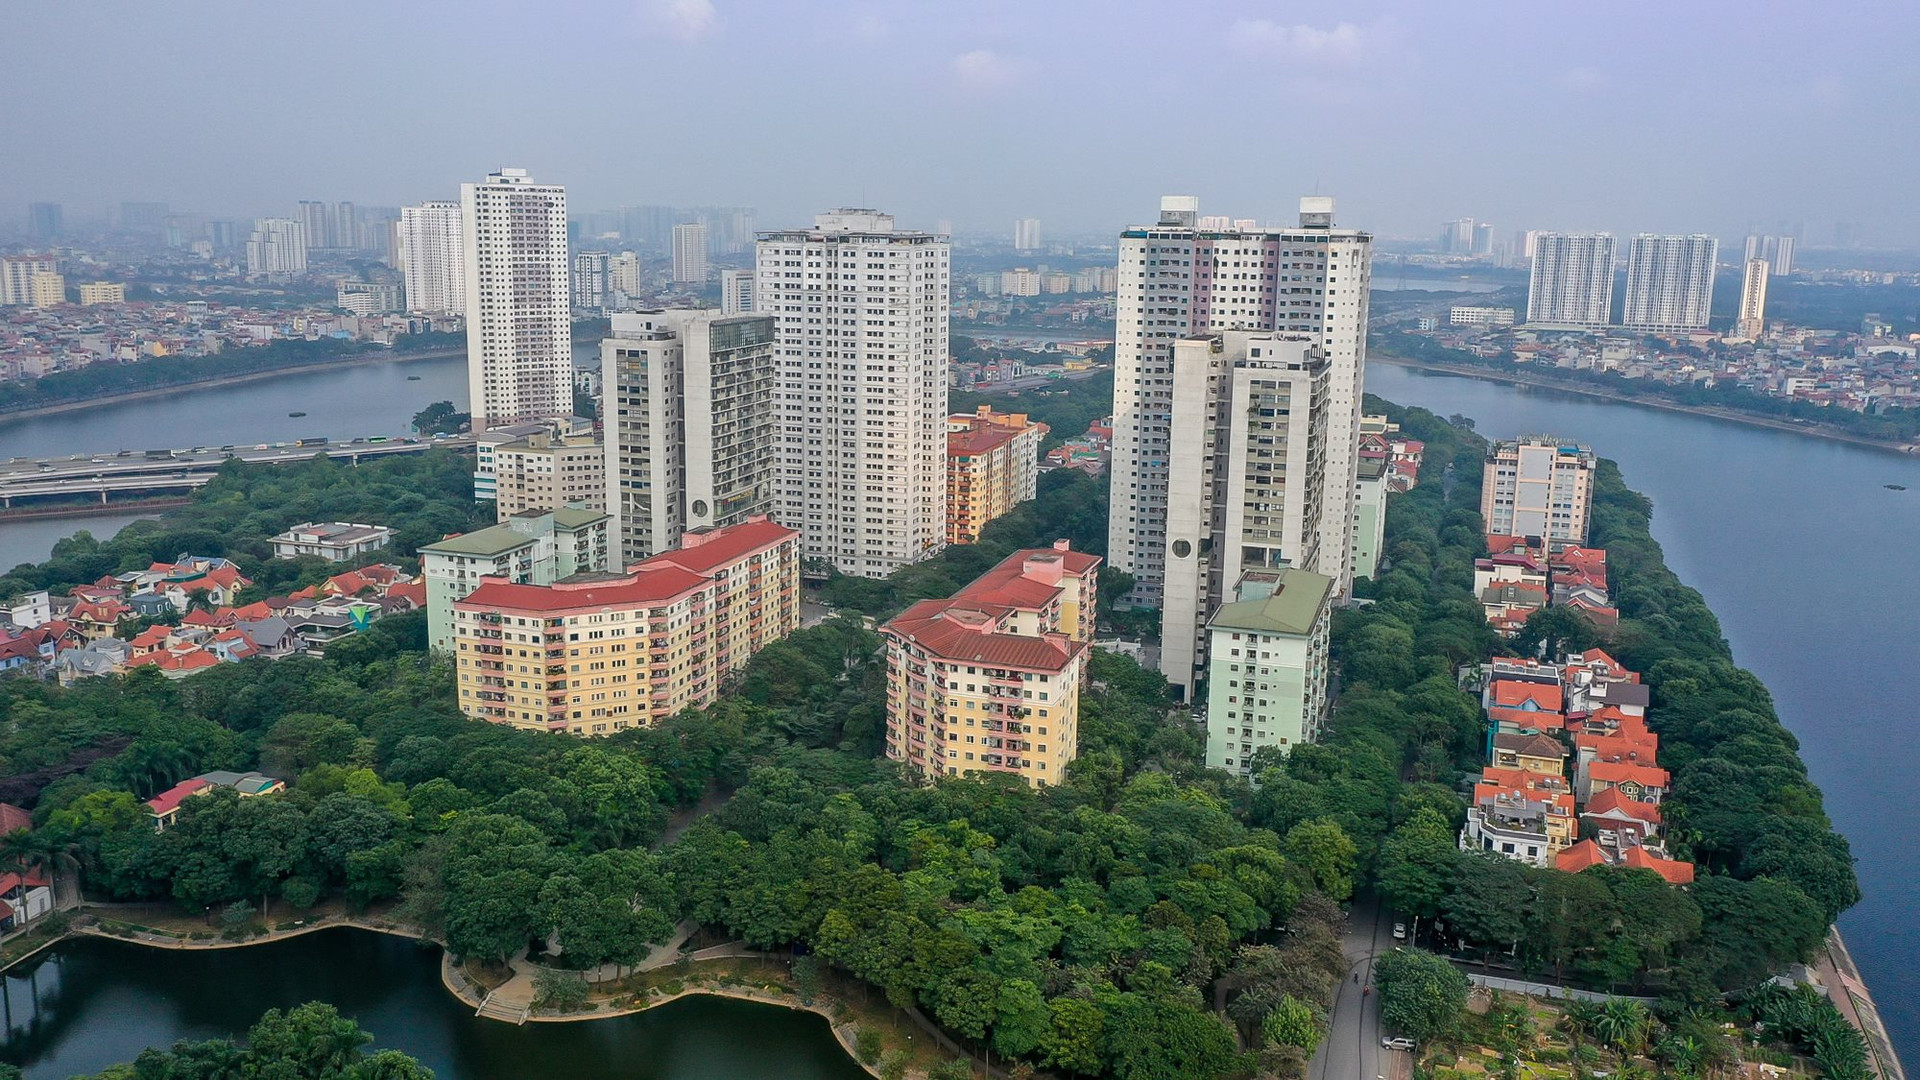 Phường đông dân nhất Hà Nội, gấp đôi một thành phố vùng cao
